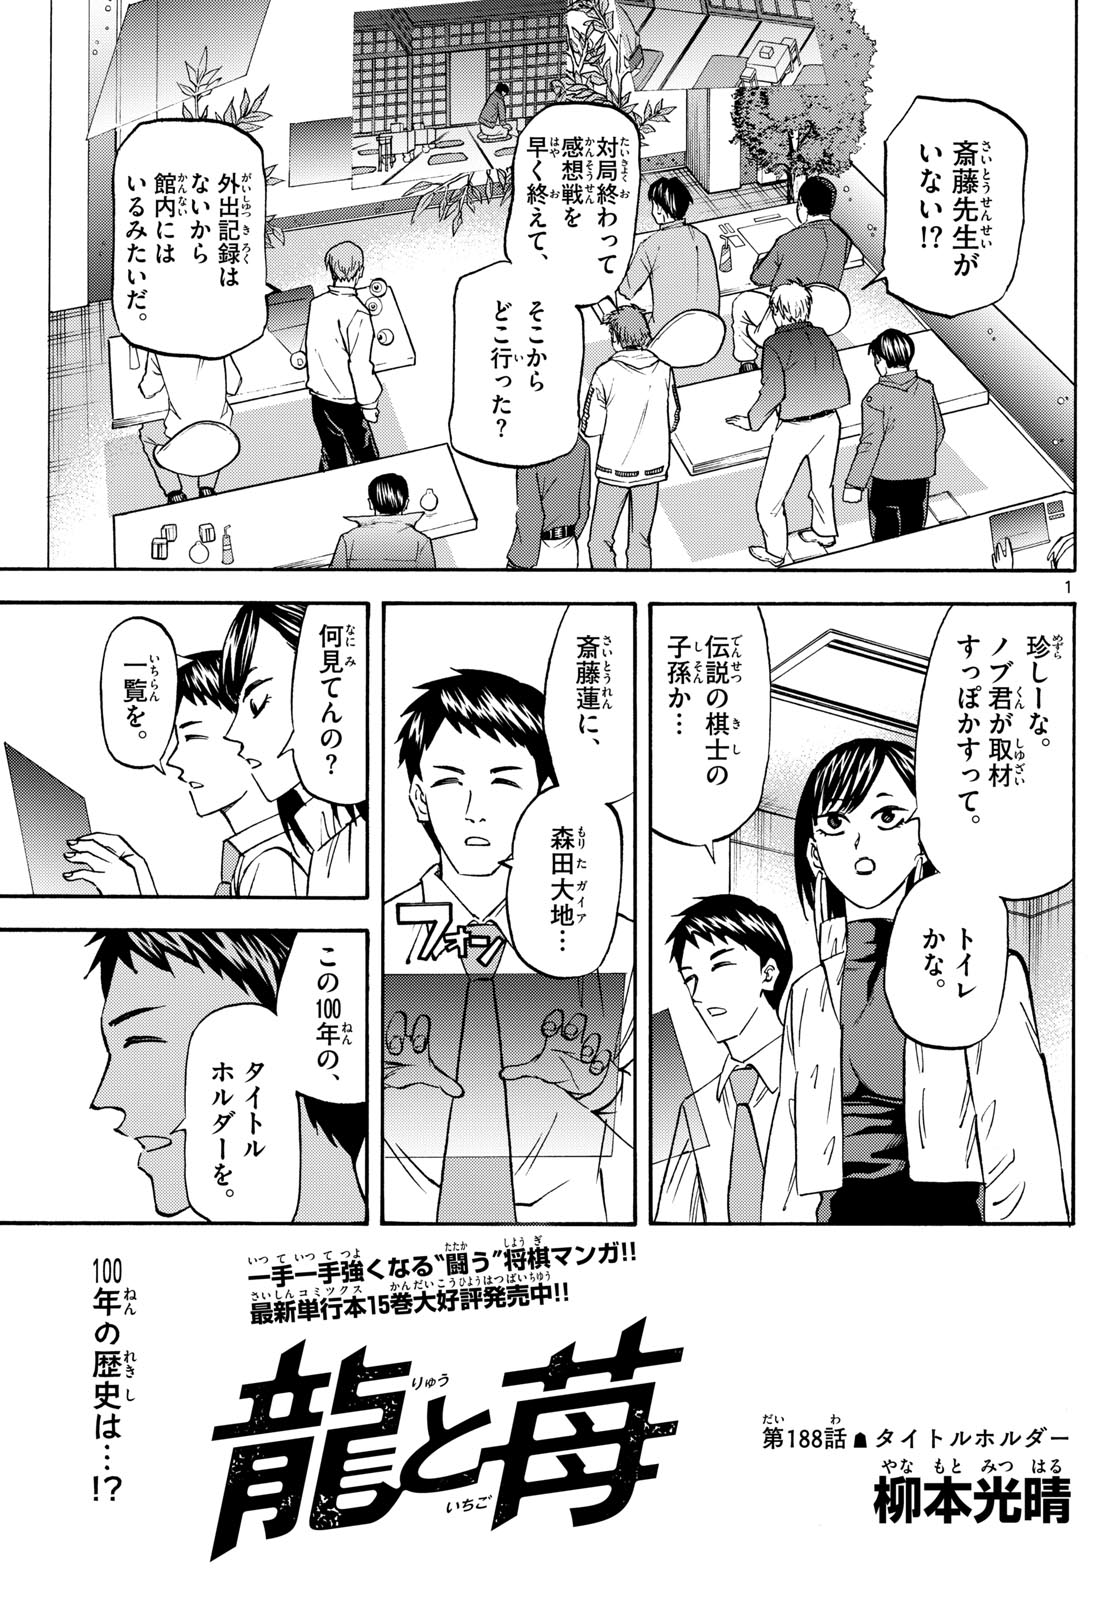 Tatsu to Ichigo - Chapter 188 - Page 1